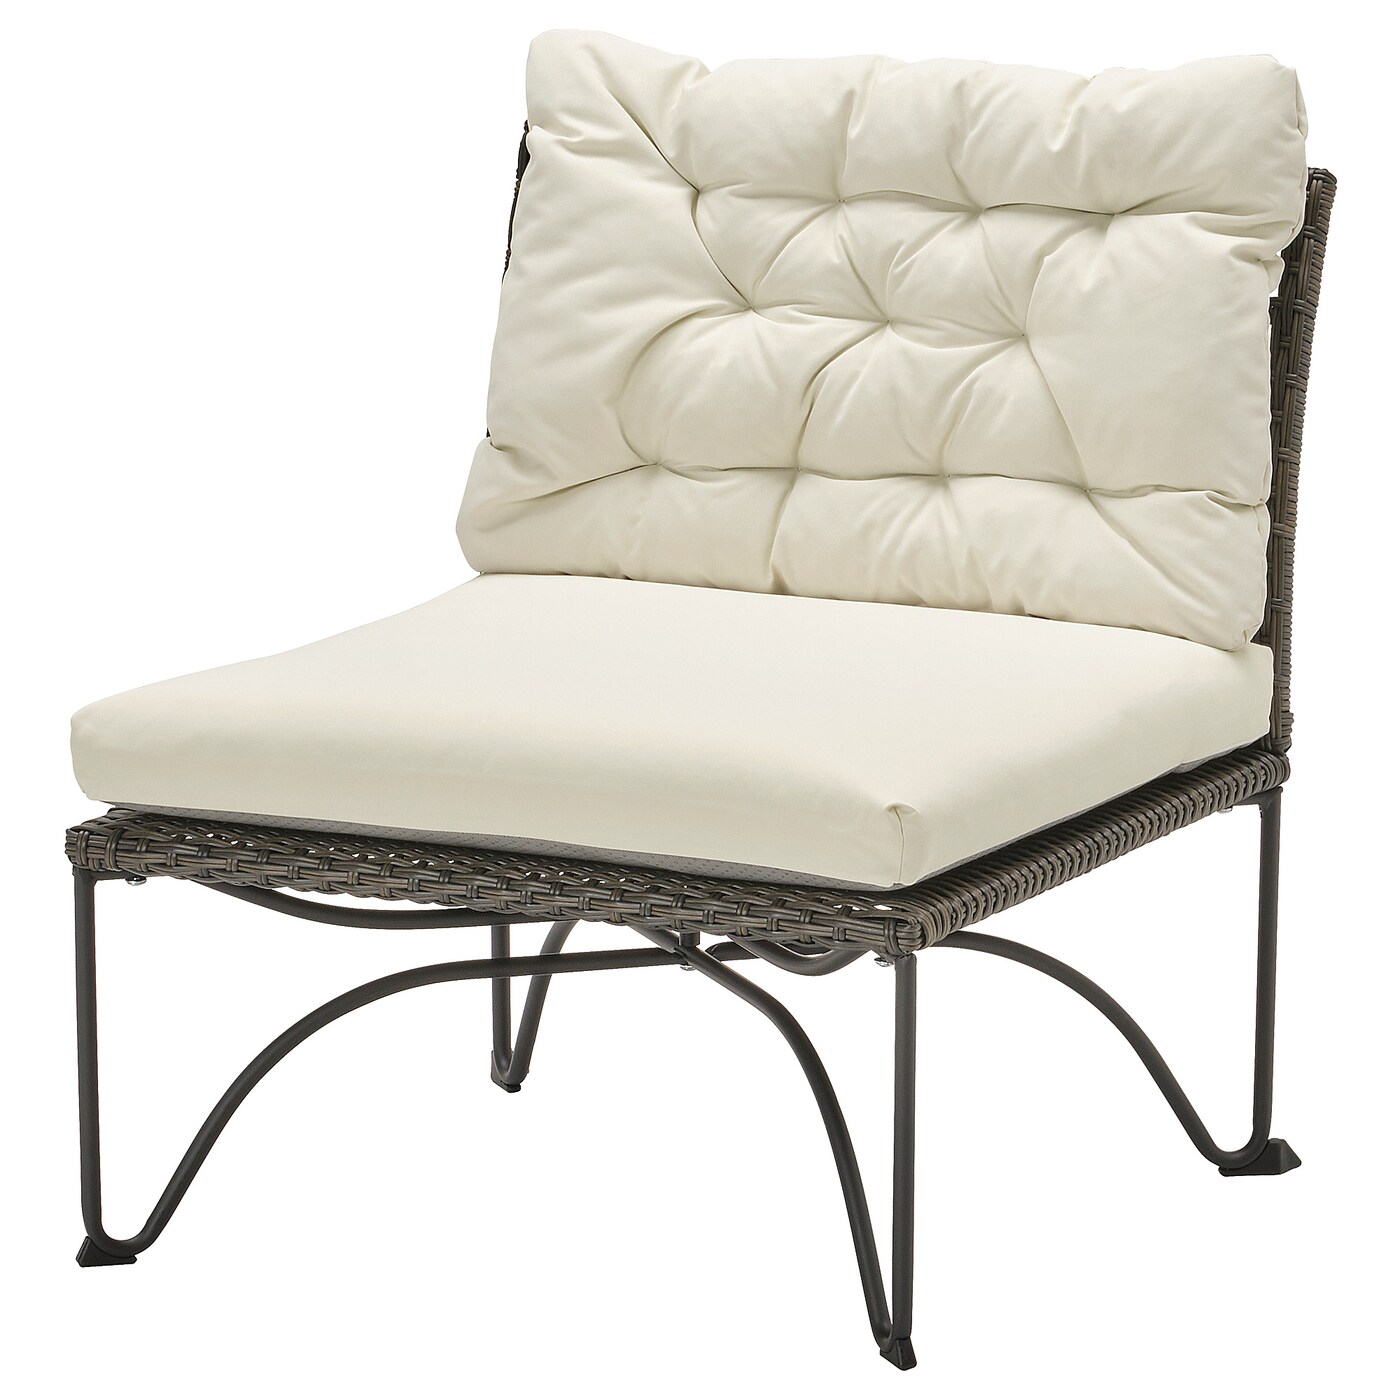 Кресло садовое - IKEA JUTHOLMEN, 65x73x83 см, серый/белый, ЮТХОЛЬМЕН ИКЕА